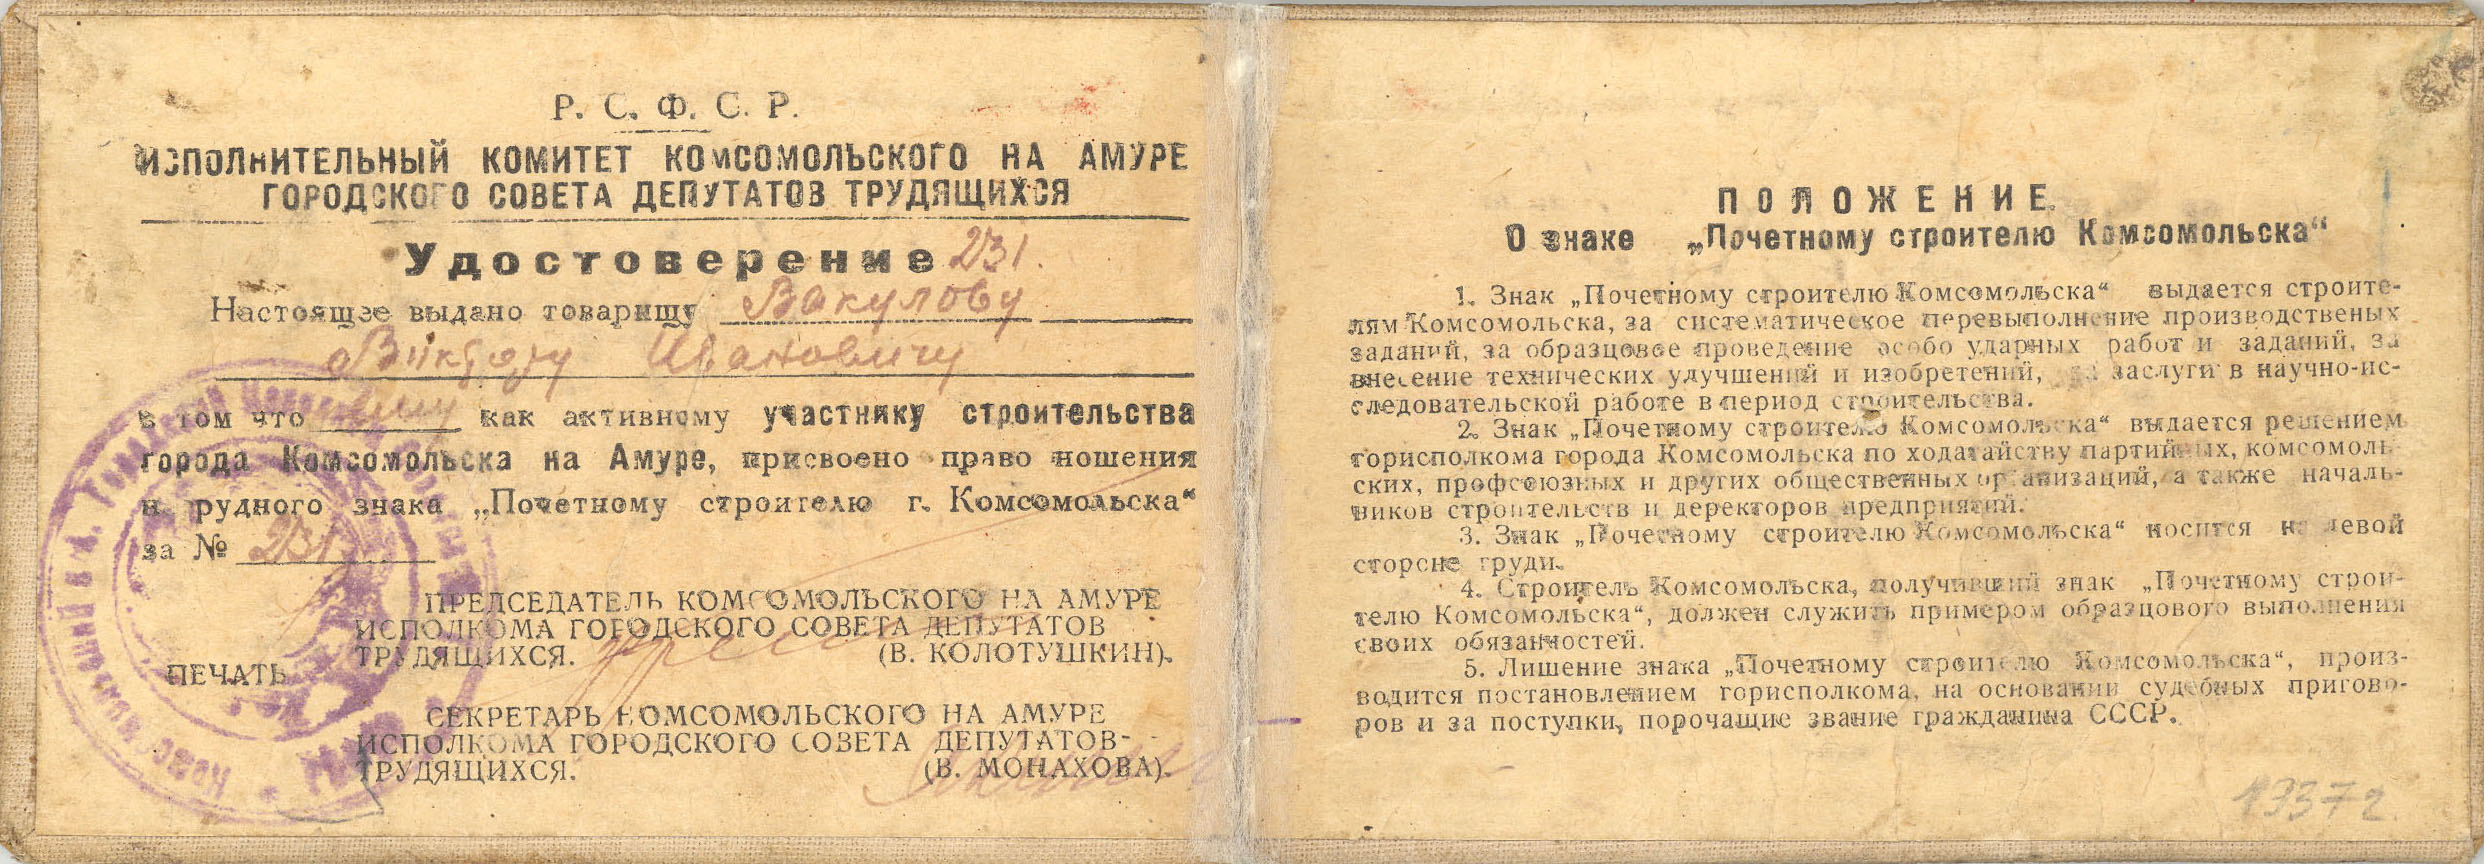 Удостоверение № 231 к нагрудному знаку 'Почётному строителю г. Комсомольска' Вакулова Виктора Ивановича. 1937 г.